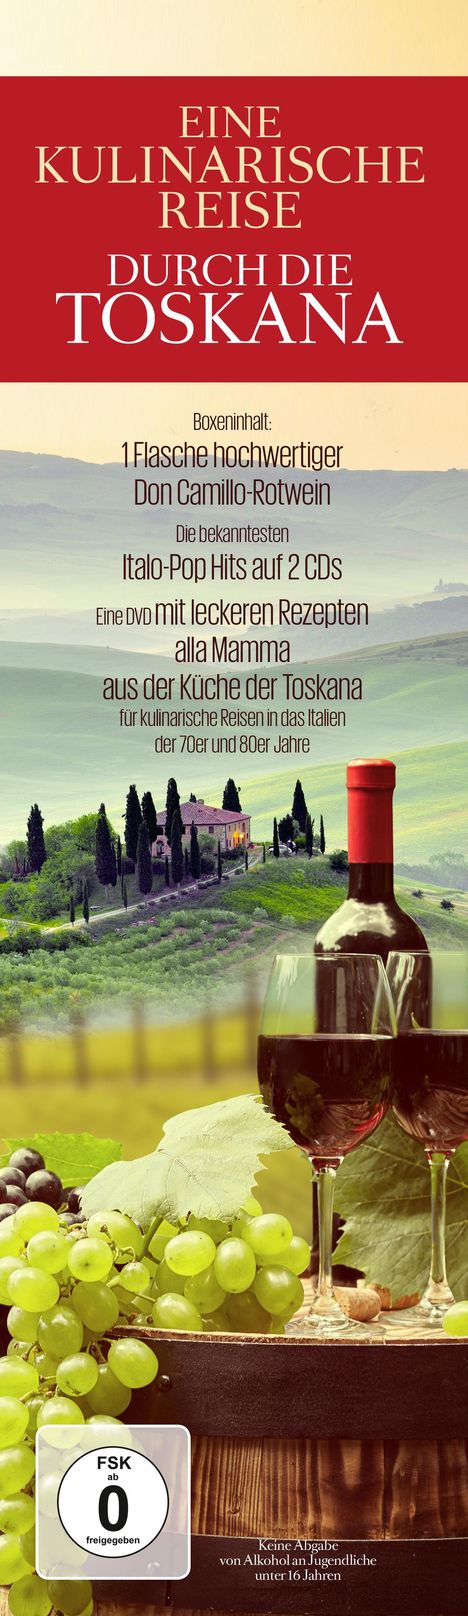 Special Interest: Eine kulinarische Reise durch die Toskana, 2 CDs und 1 DVD